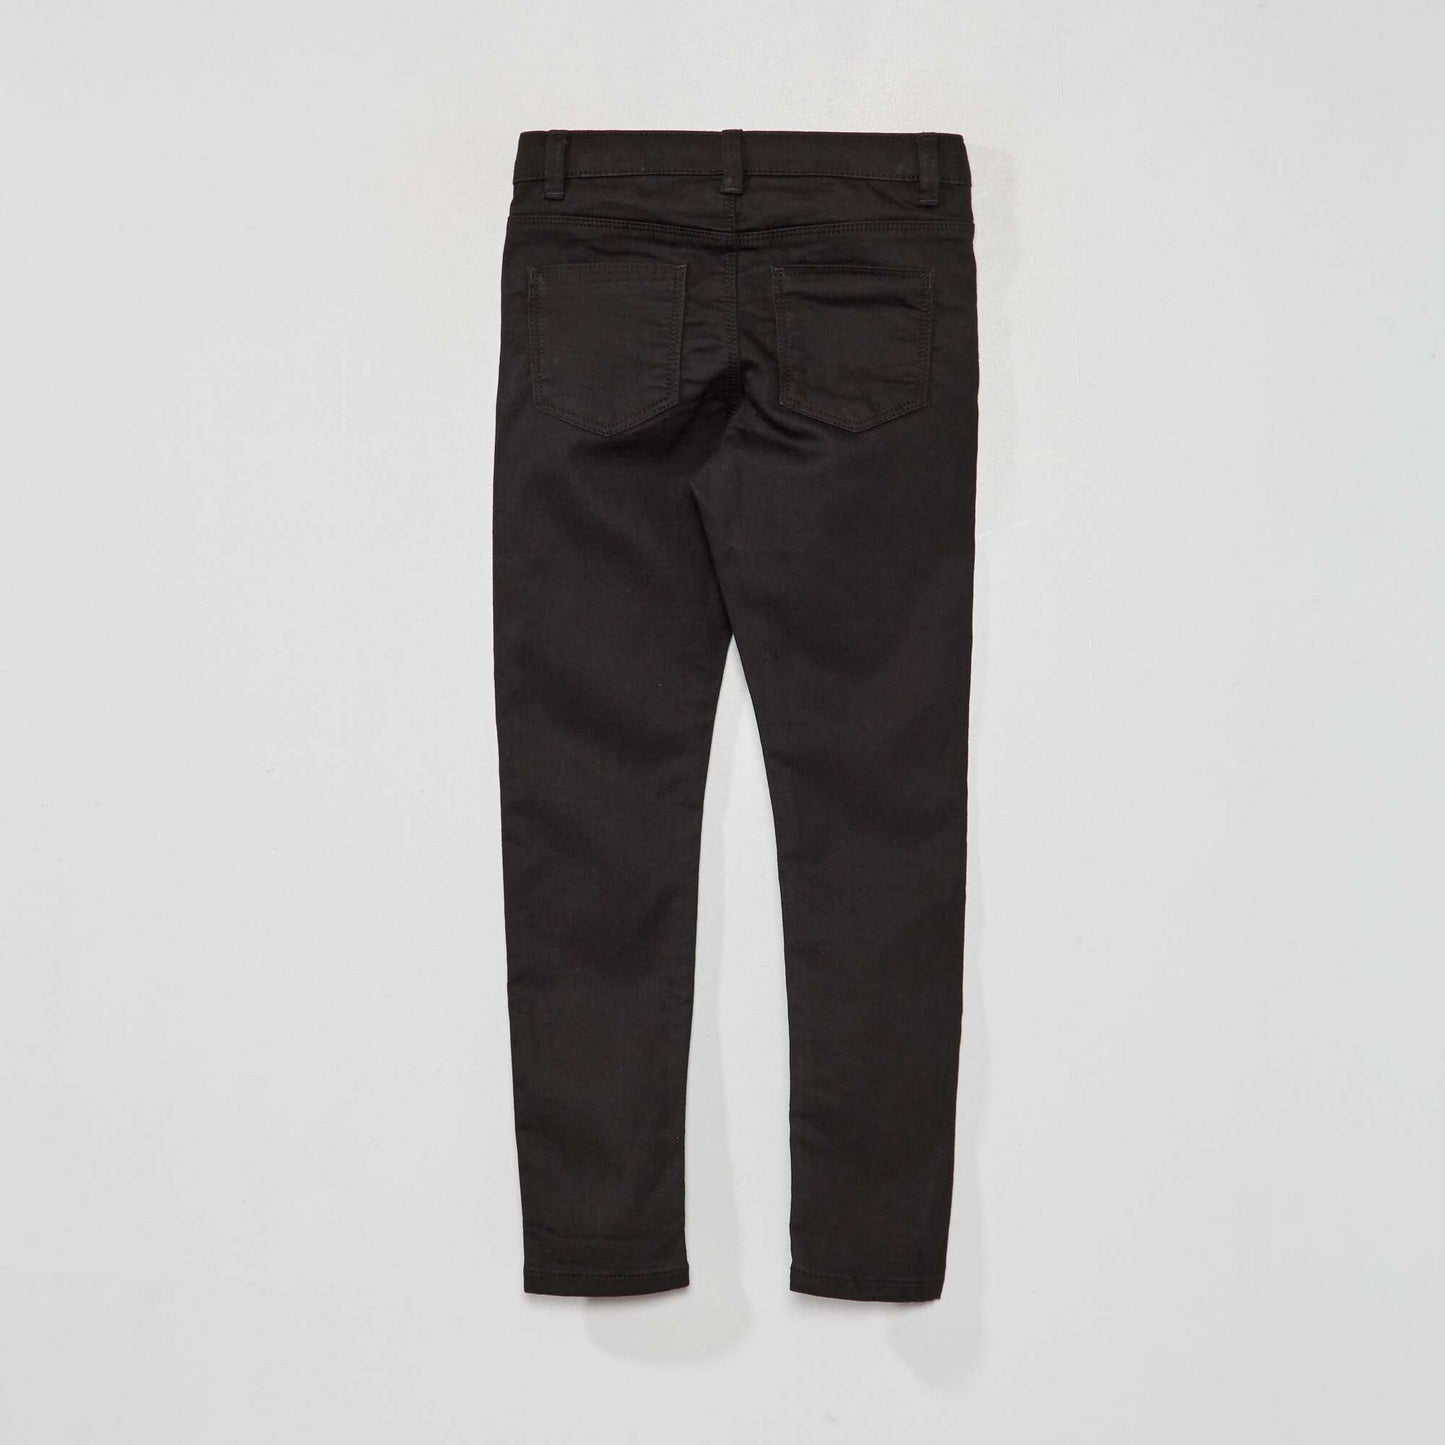 Eco-design skinny jeans black